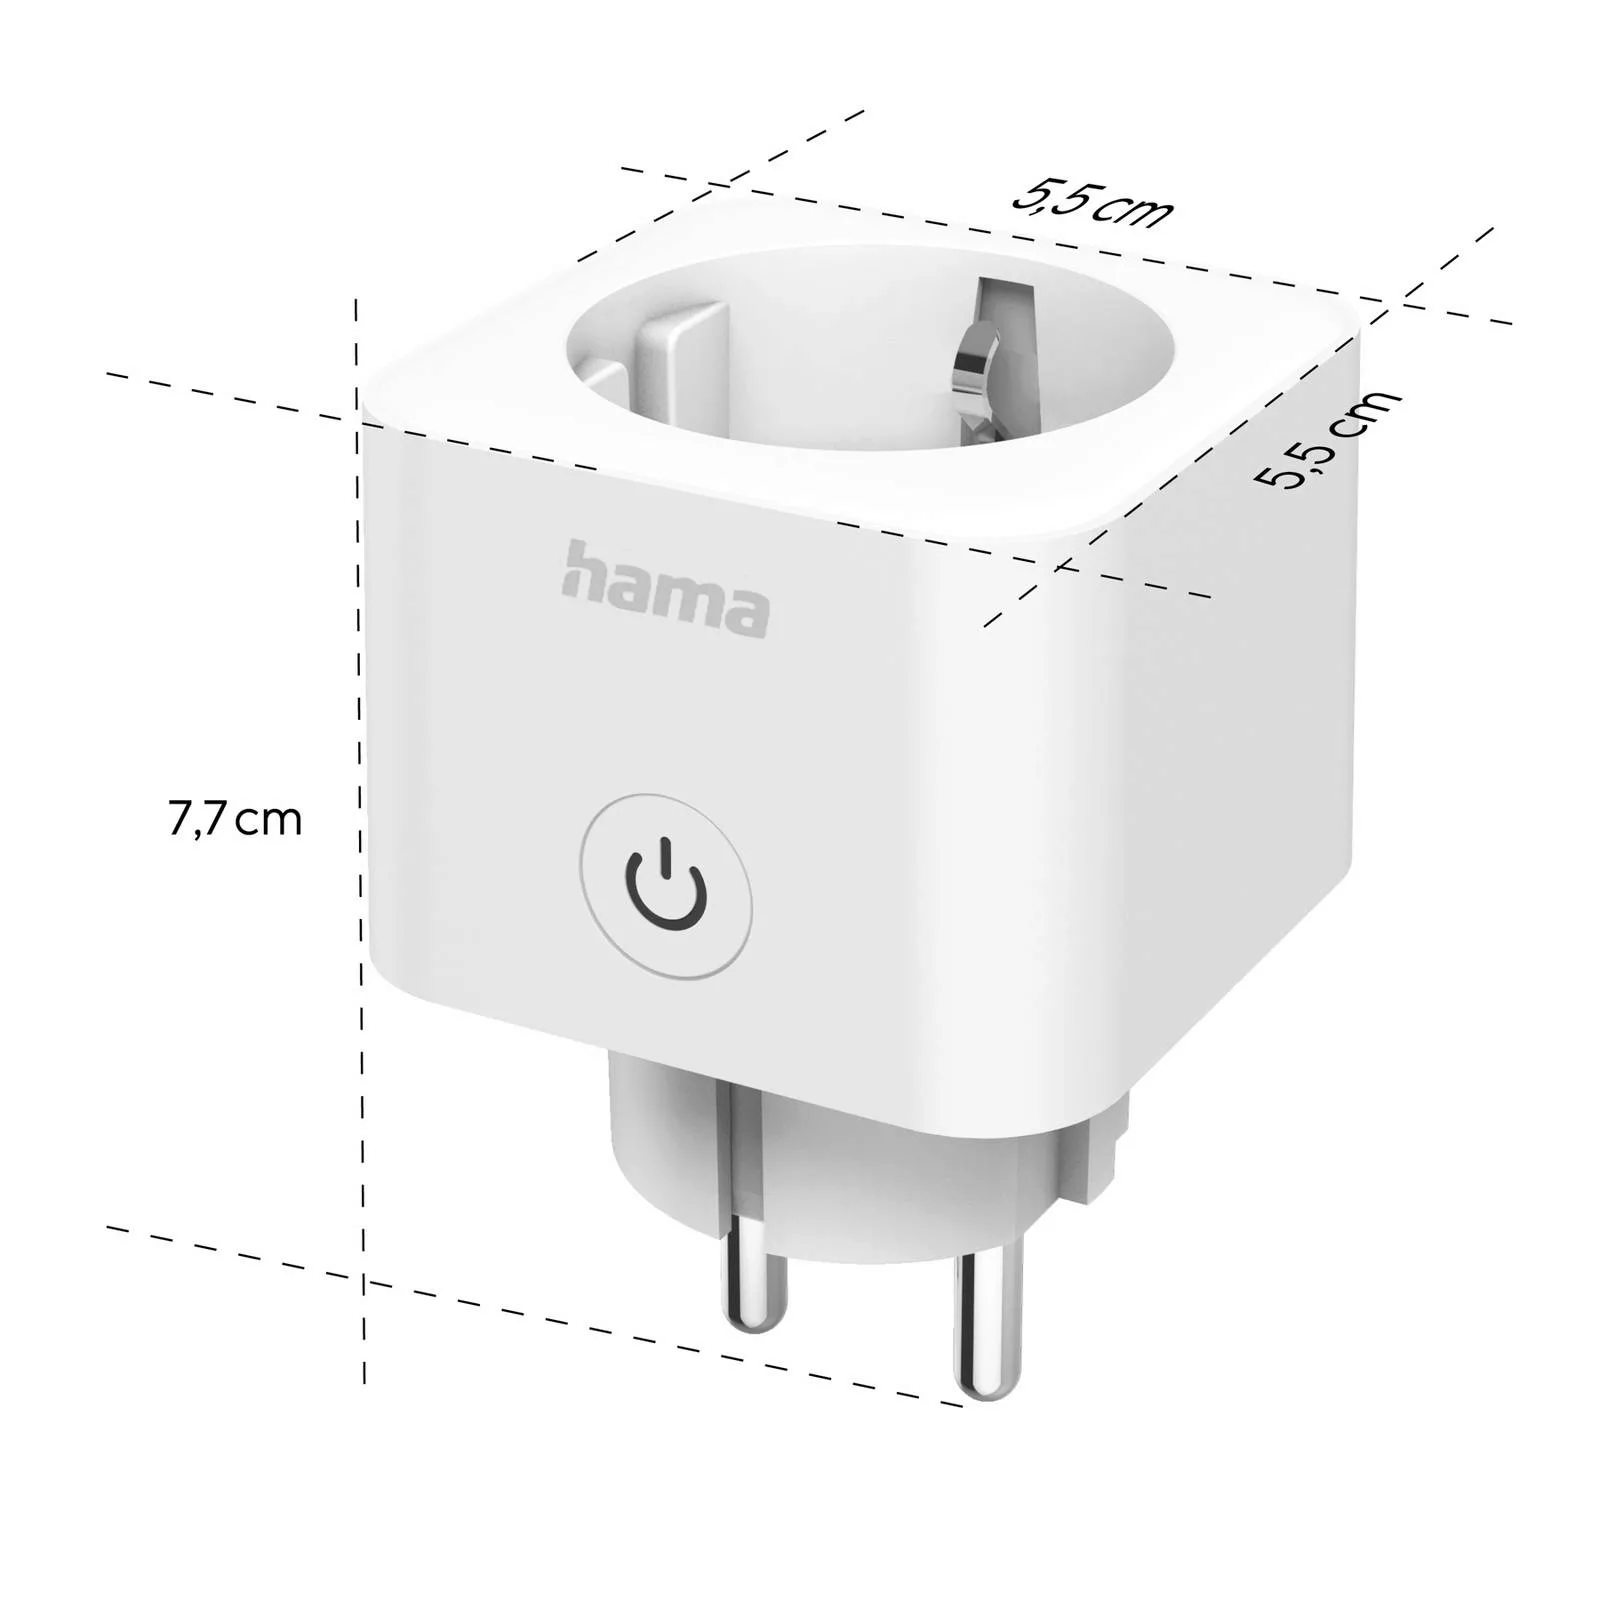 Hama WLAN-Steckdose Smart, Matter-fähig, weiß, 3.680 W günstig online kaufen